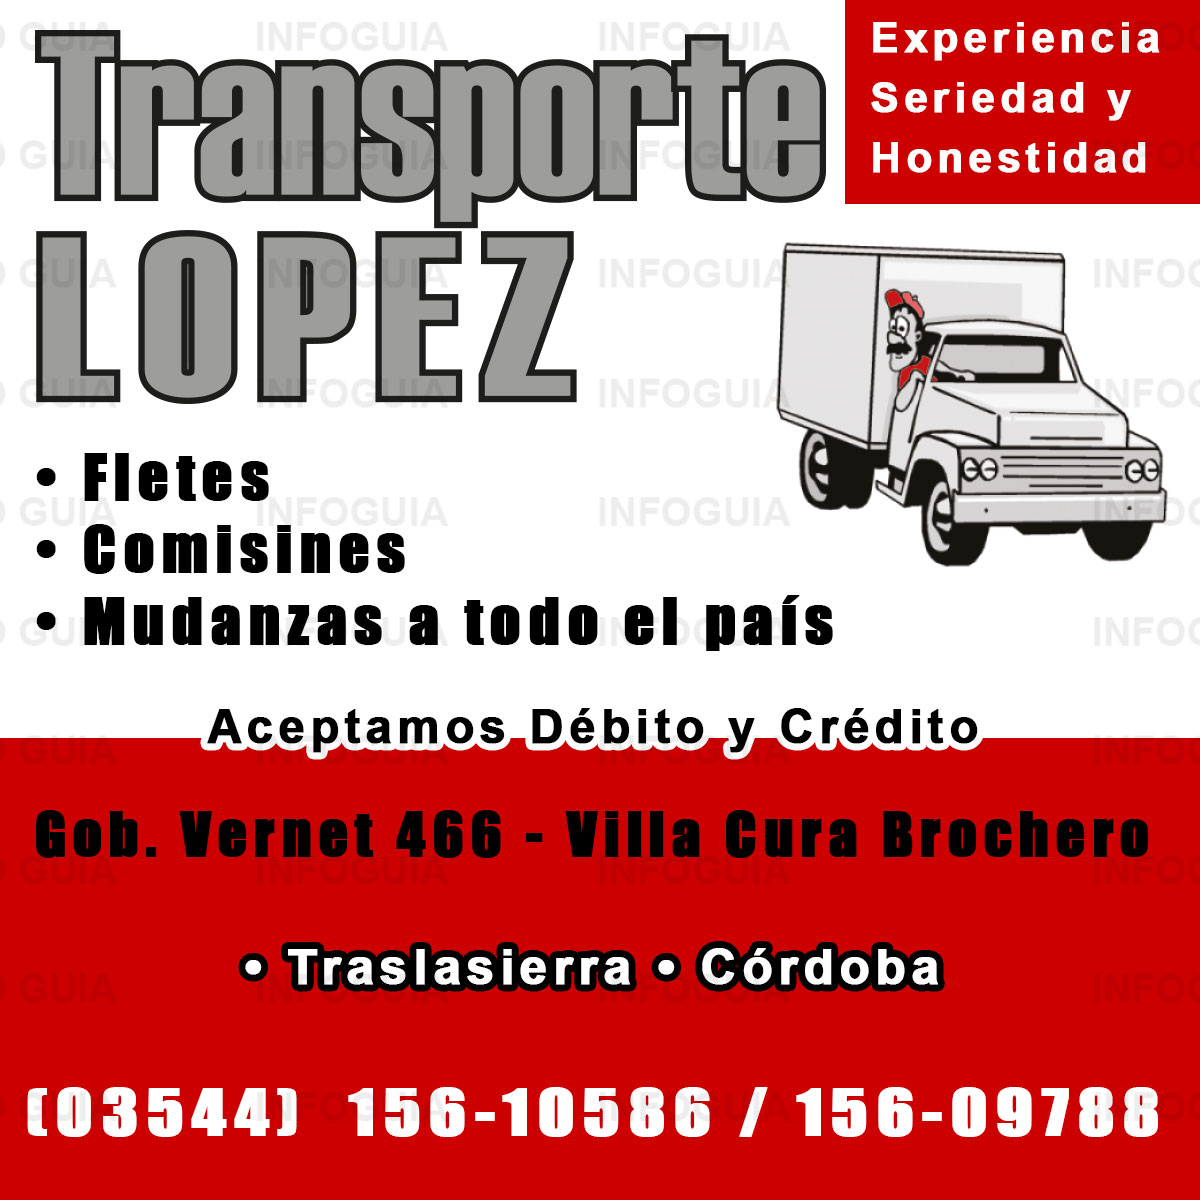 Transporte López - Villa Cura Brochero - Experiencia, seriedad y honestidad. Fletes, comisiones, mudanzas a todo el país. Aceptamos débito y crédito.